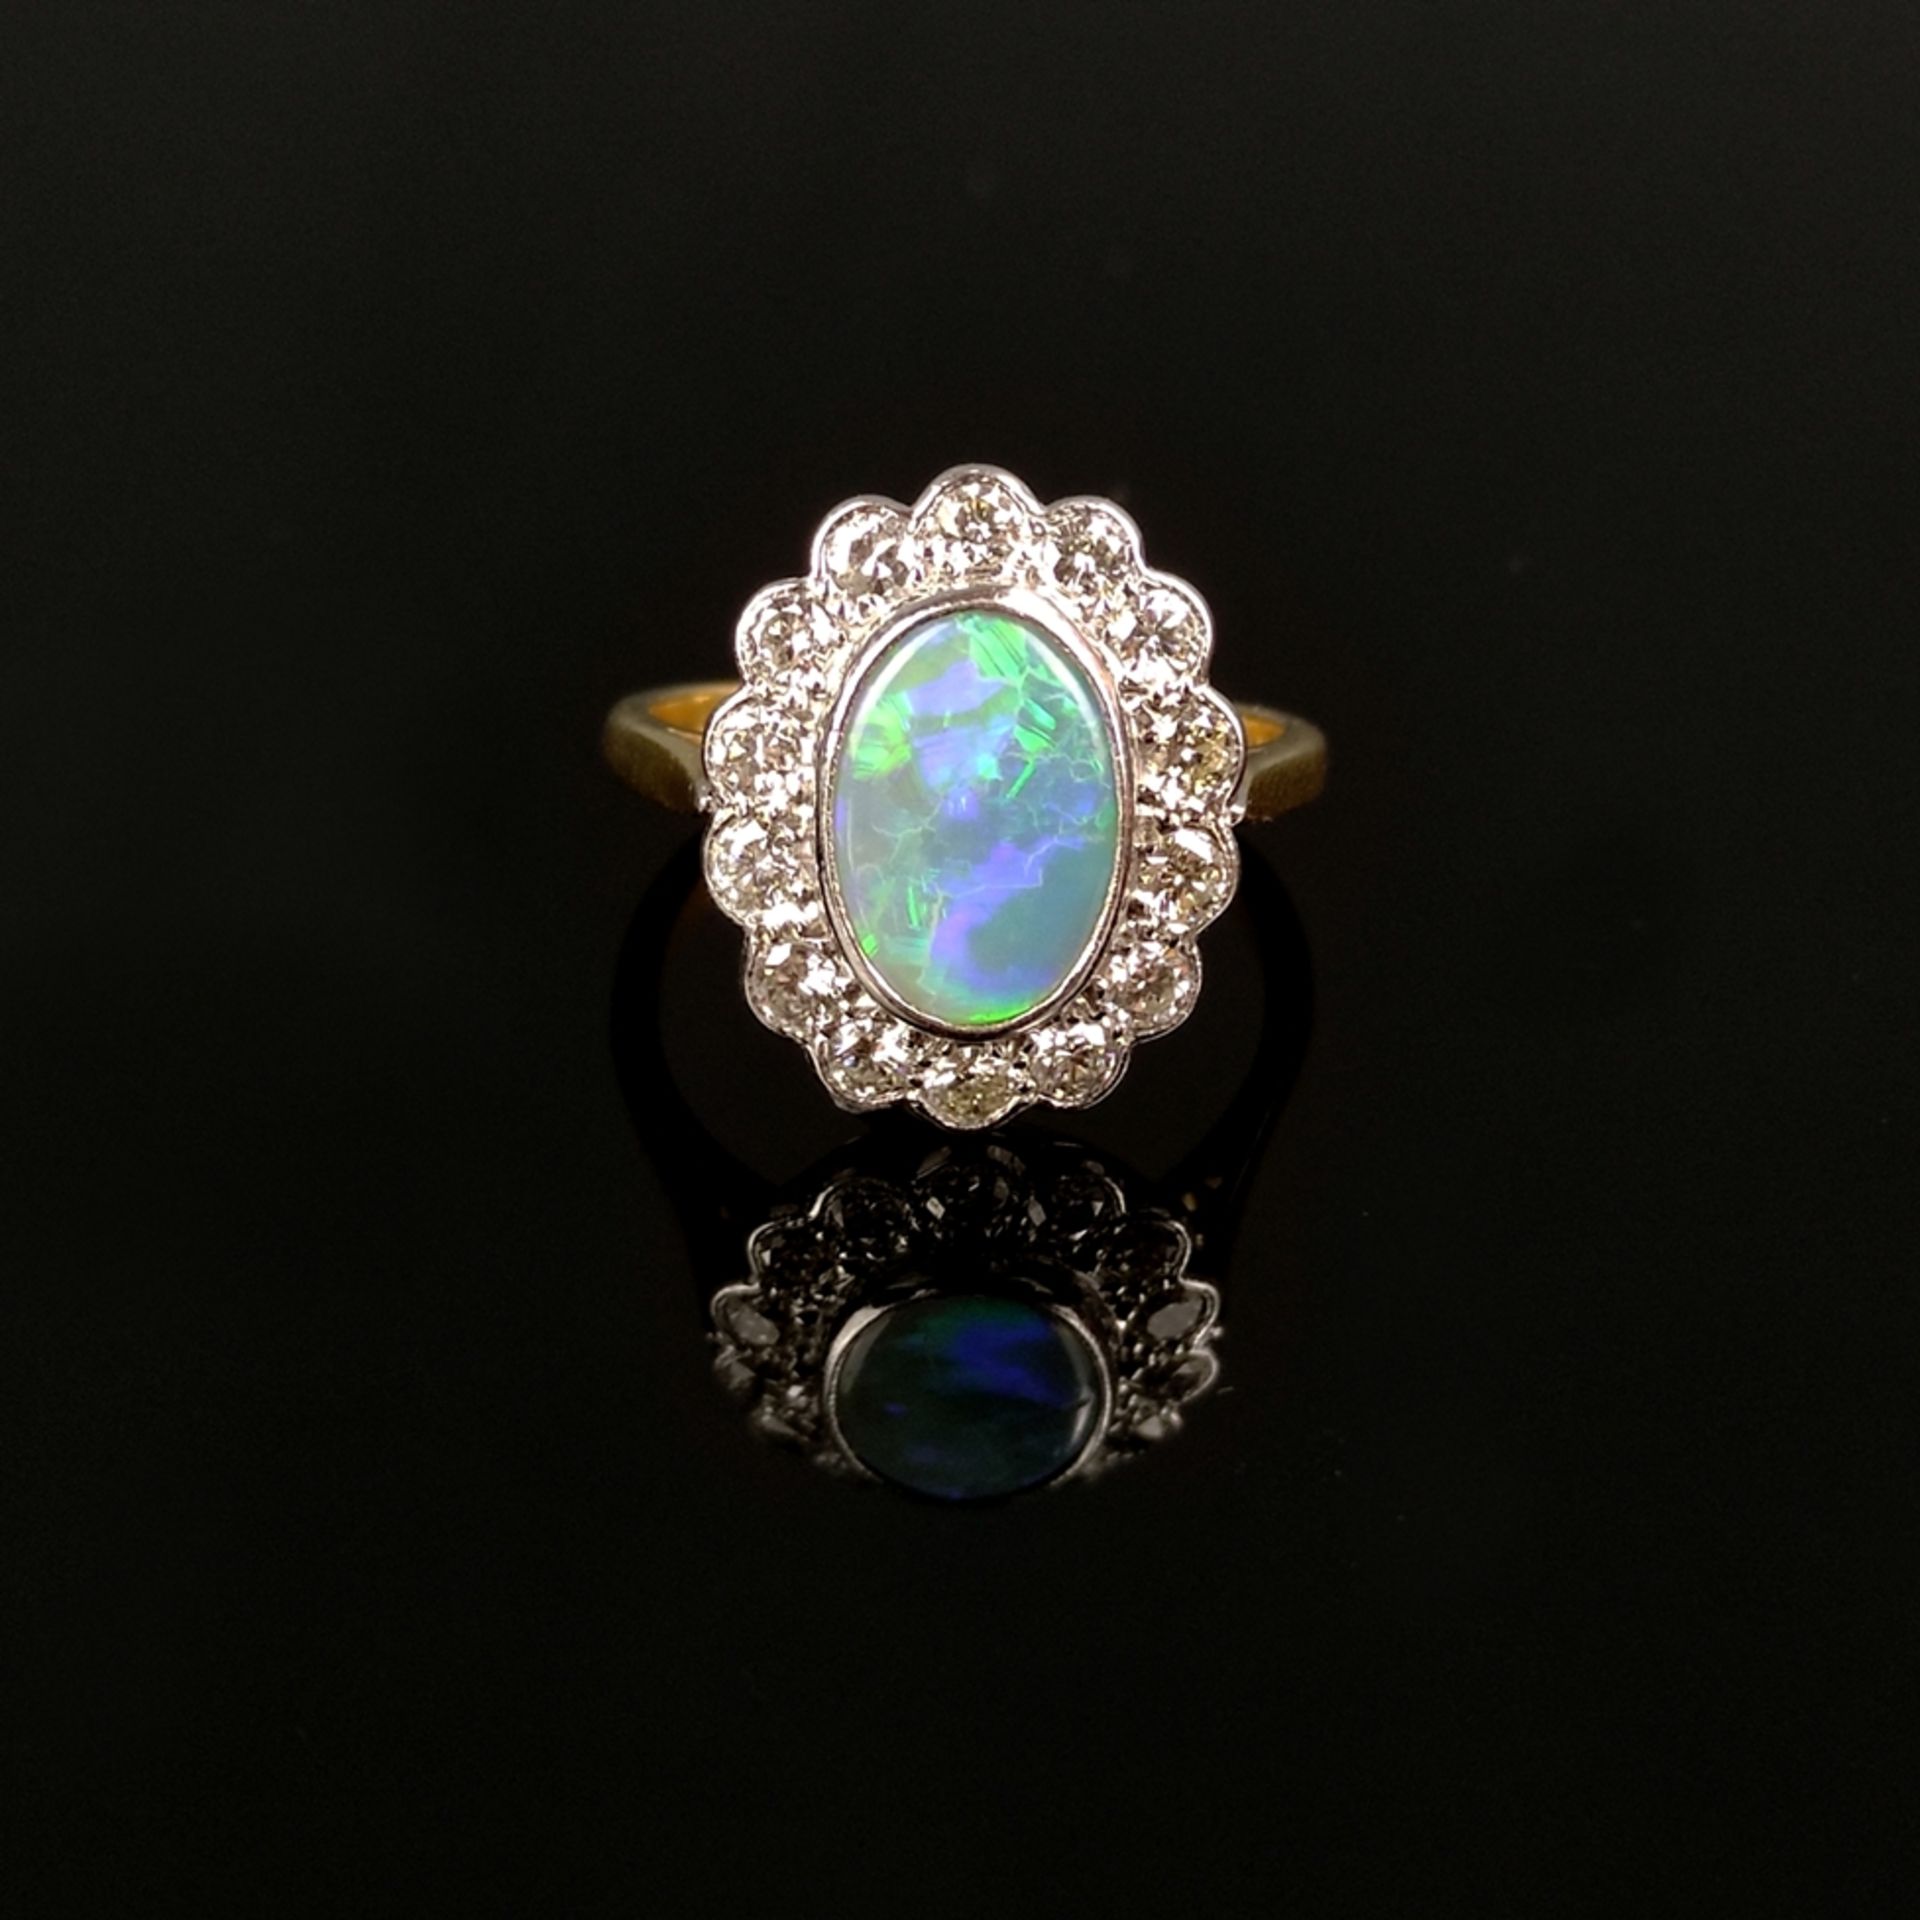 Ausgefallener Opal-Ring, 750/18K Weiß-/Gelbgold (punziert), Gesamtgewicht 4,41g, mittig ovaler Opal - Bild 2 aus 3